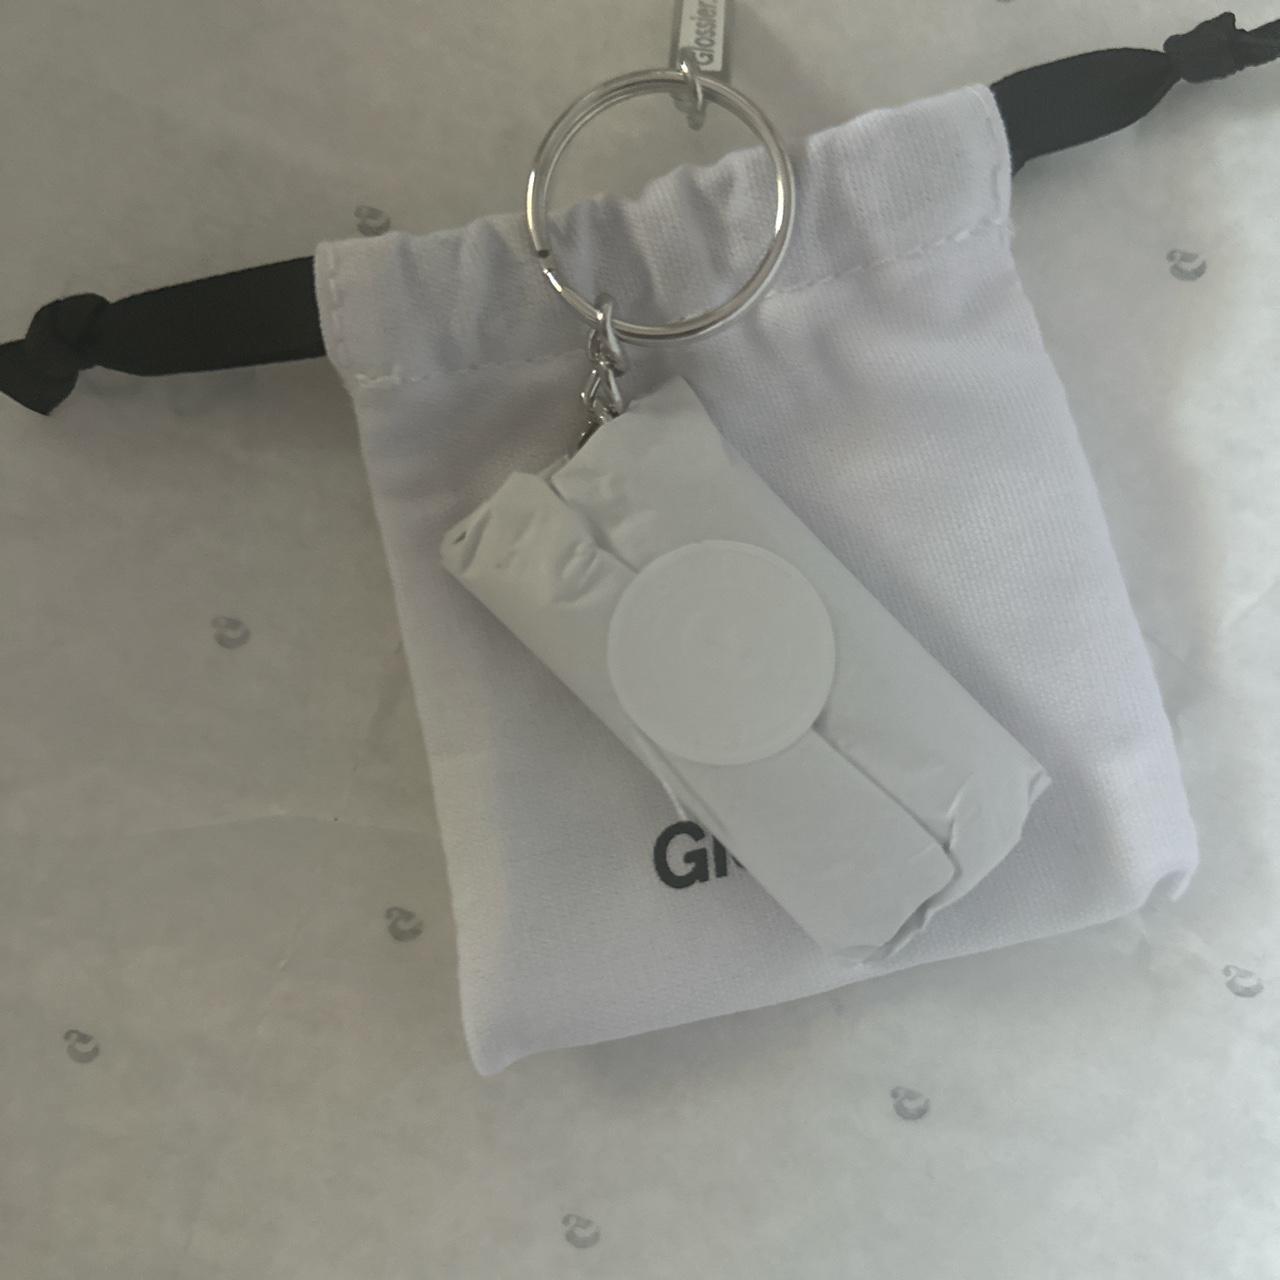 Glossier LA cellphone keychain 💕open to offers - Depop